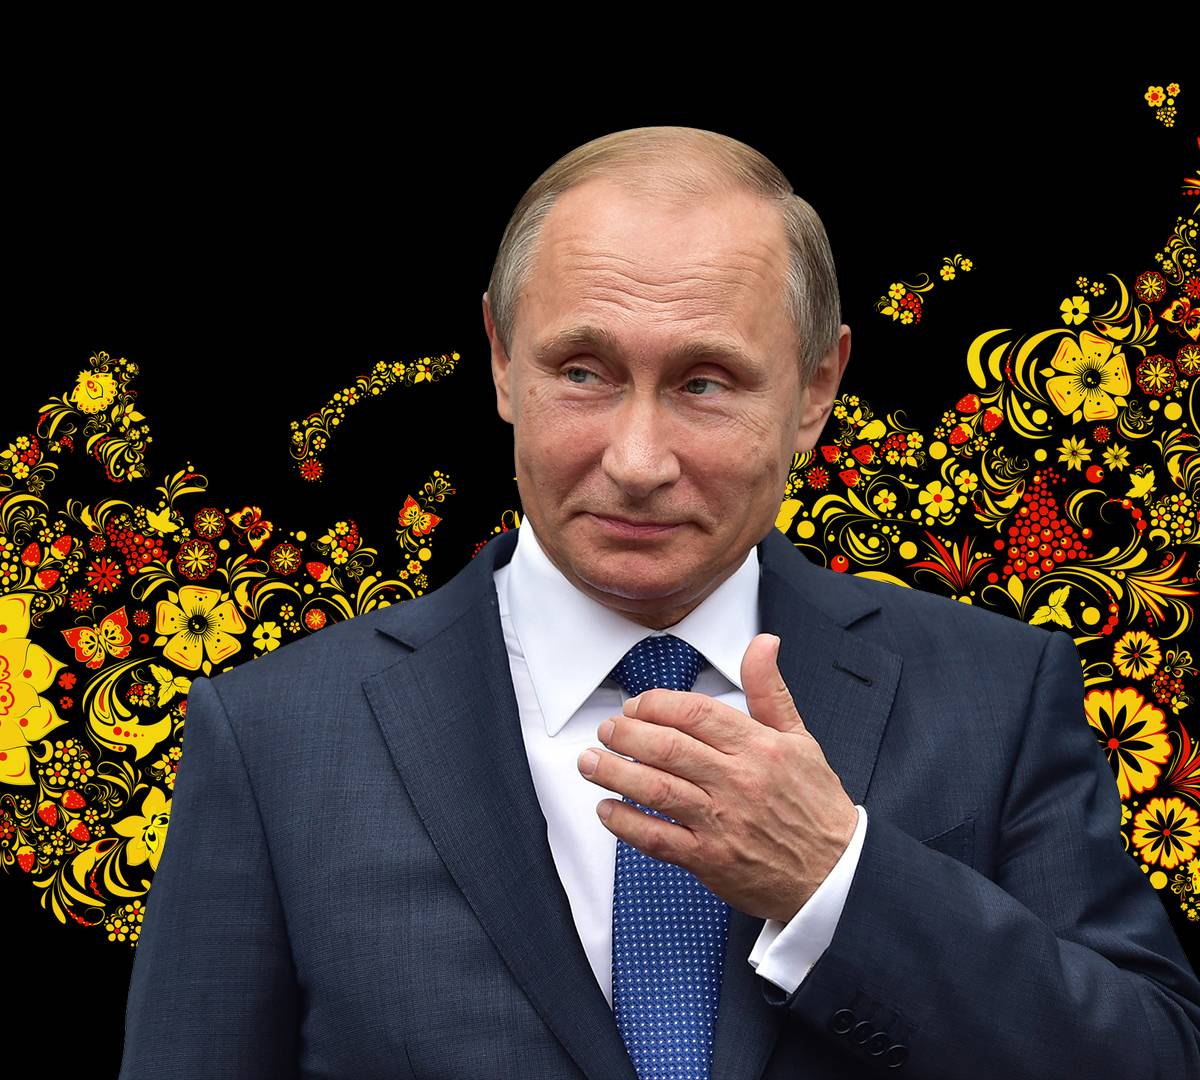 Владимир Путин создает видимость национальной политики